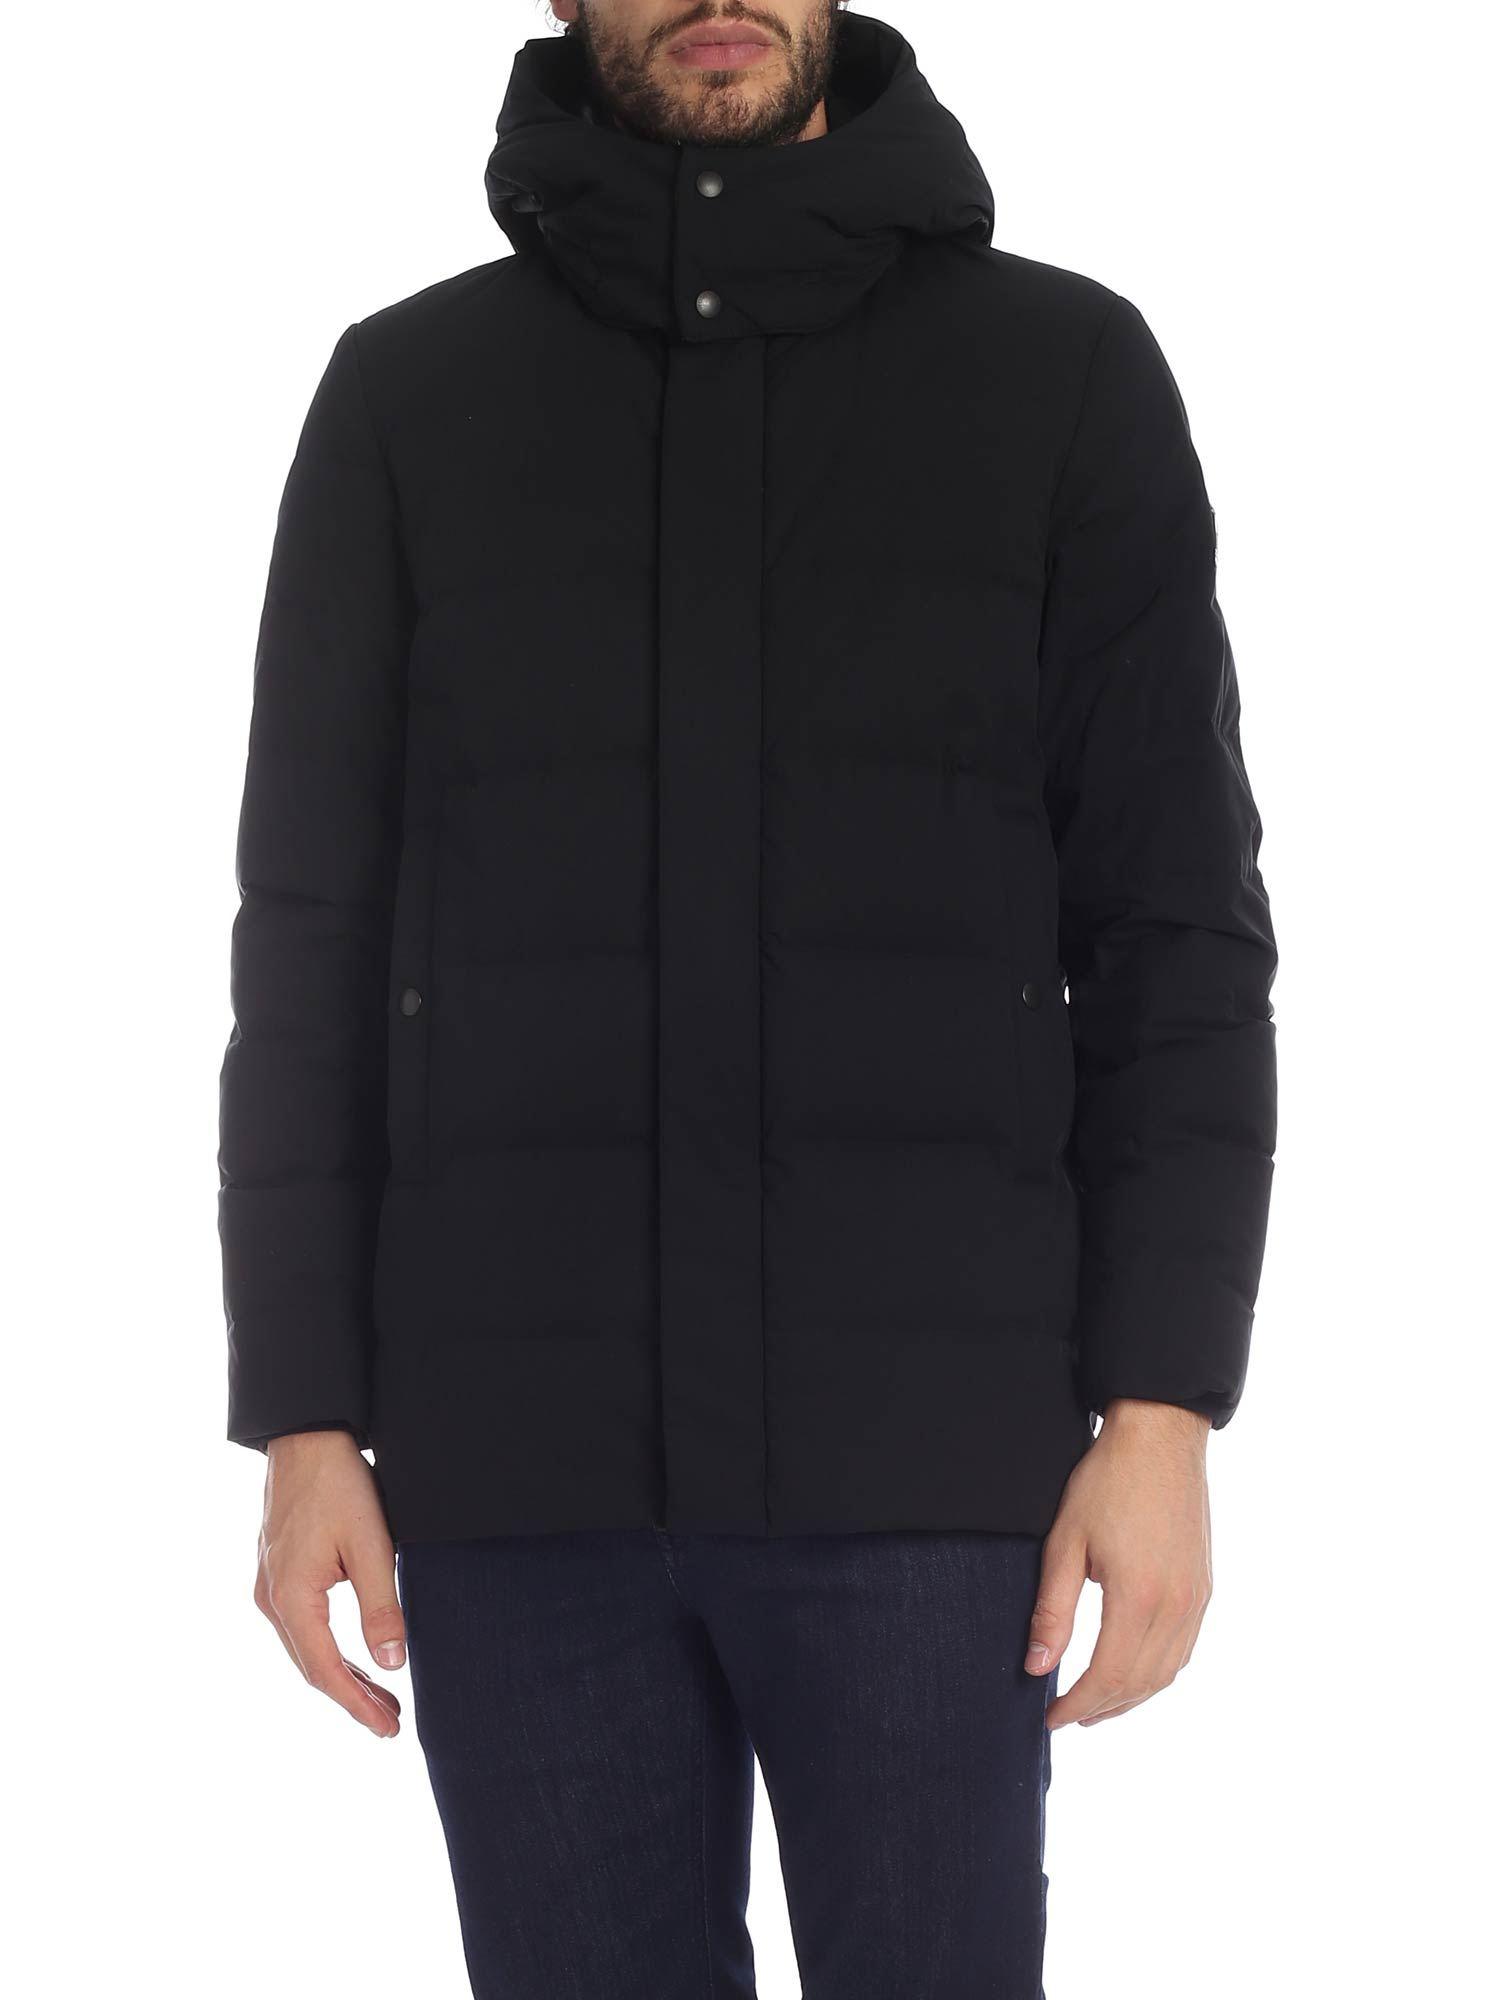 Woolrich Synthetic Sierra Down Jacket In Black for Men - Lyst